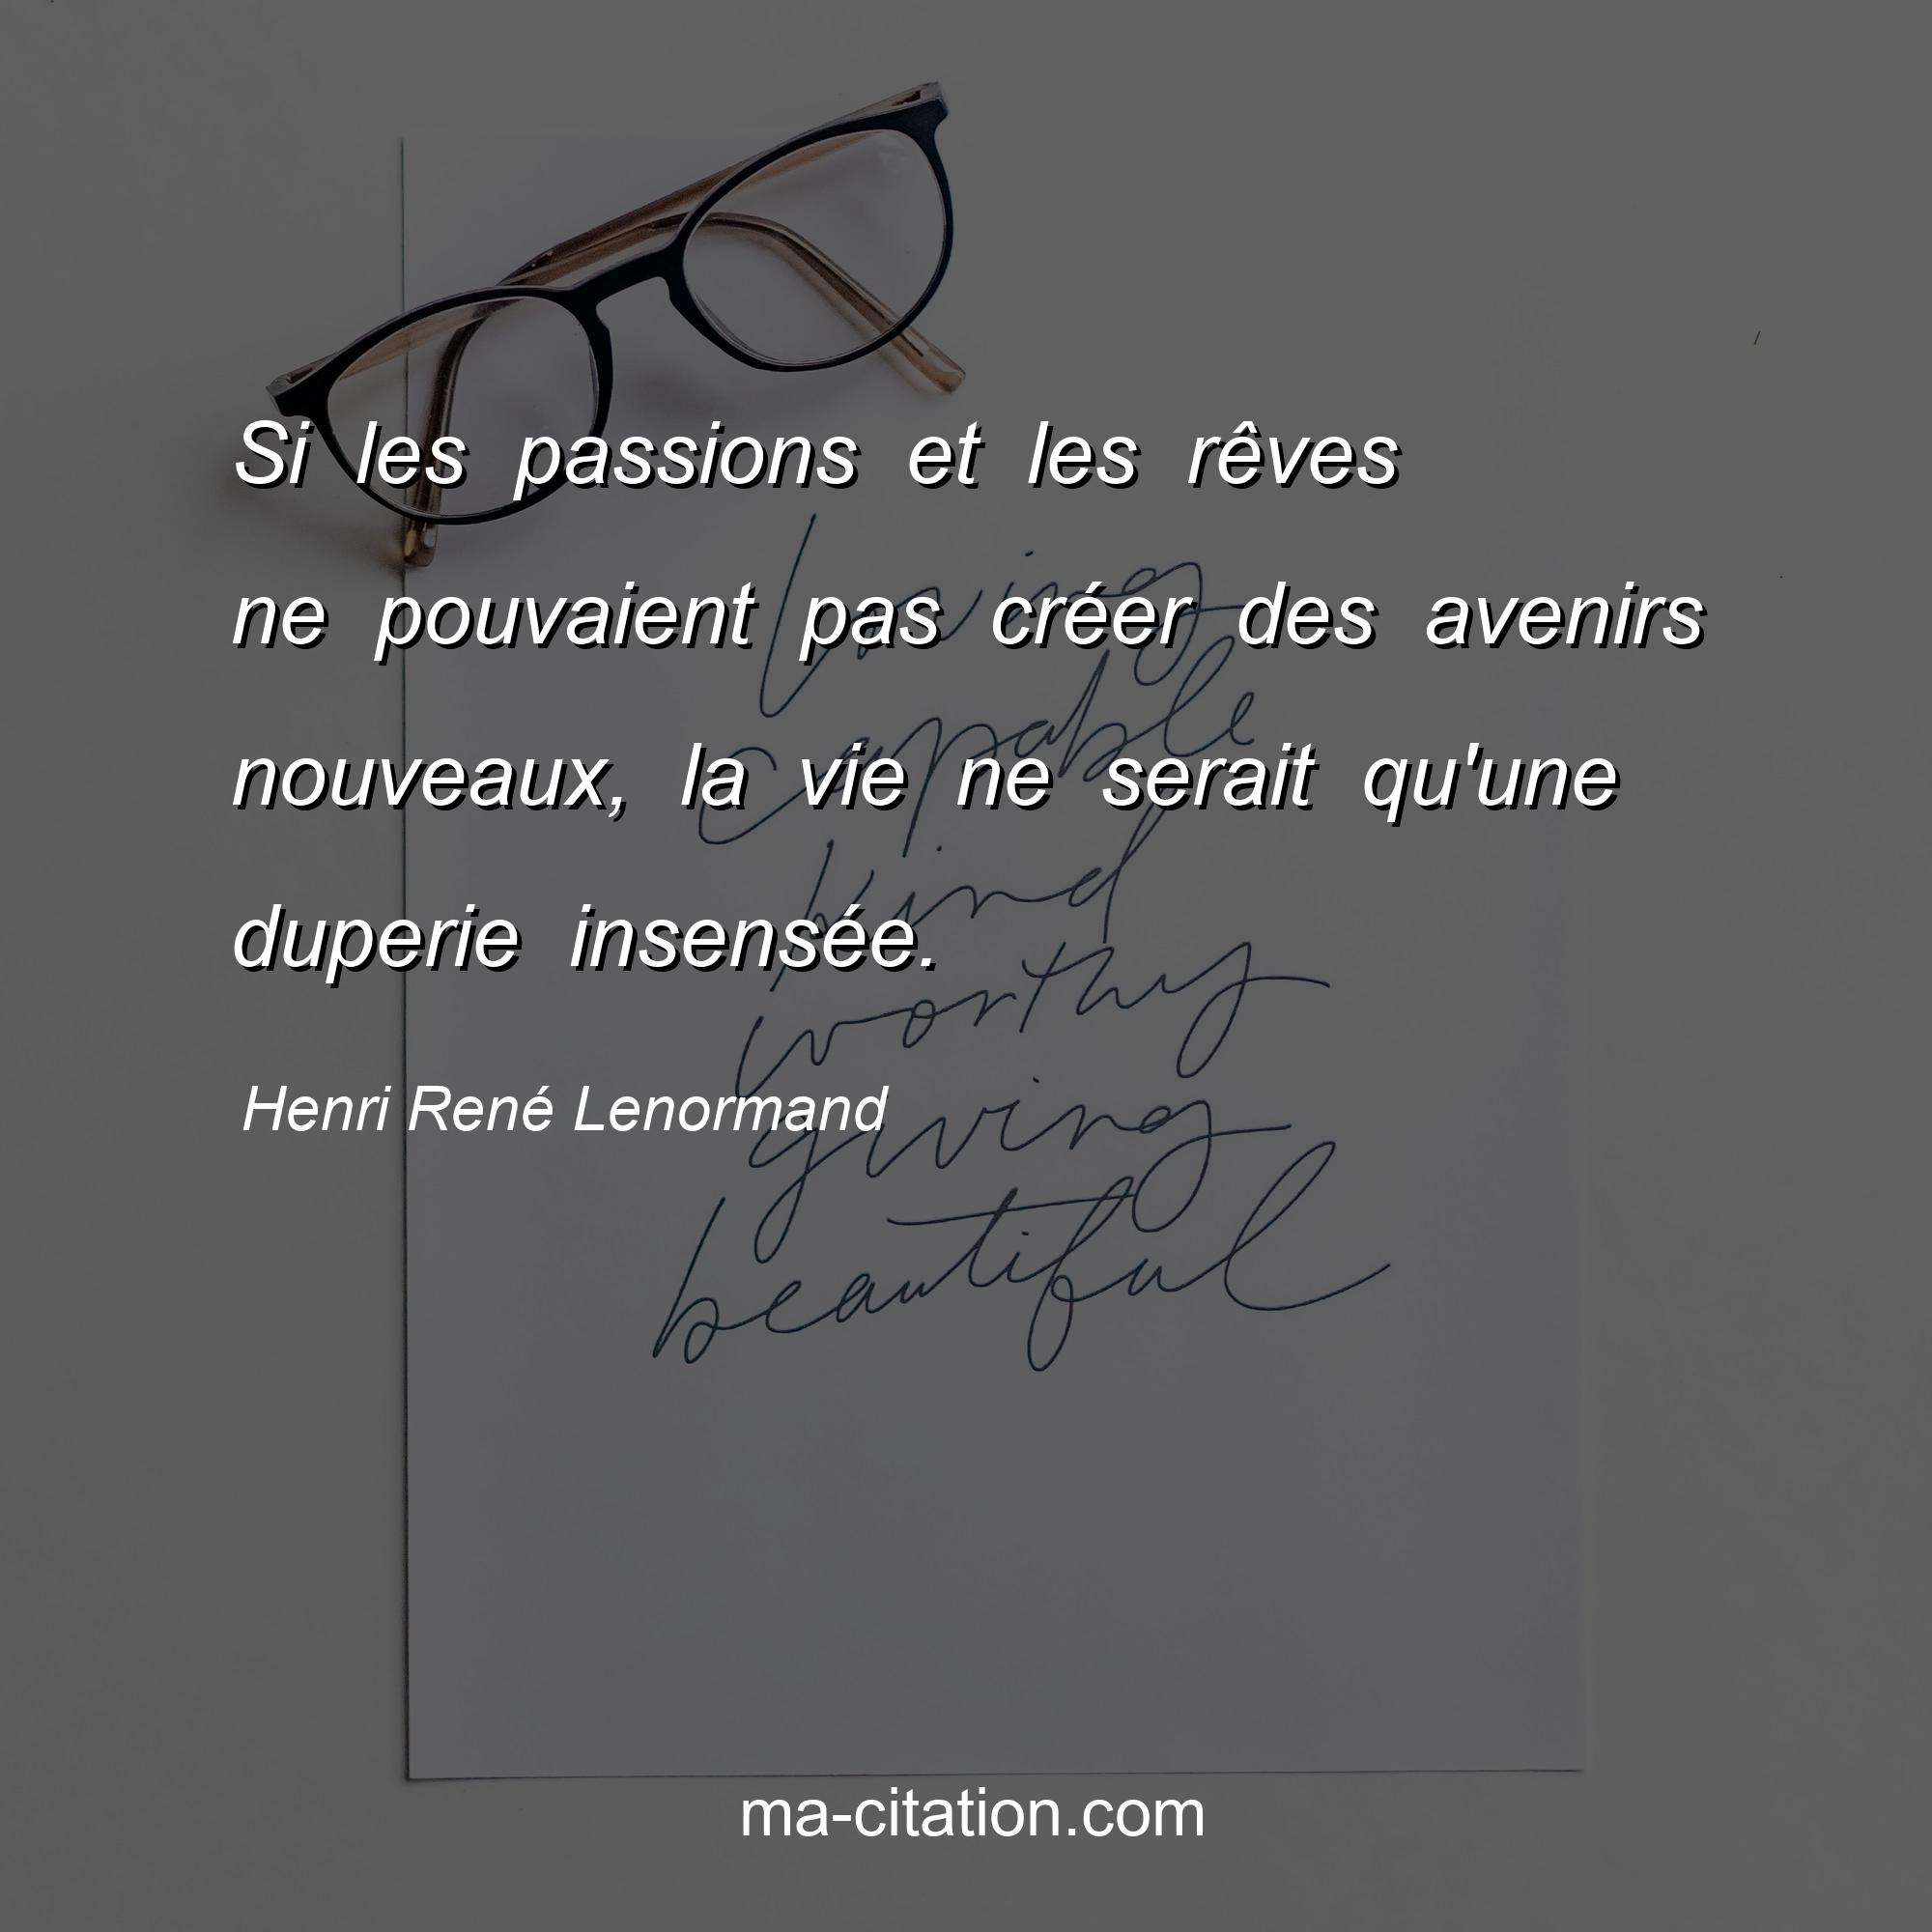 Henri René Lenormand : Si les passions et les rêves ne pouvaient pas créer des avenirs nouveaux, la vie ne serait qu'une duperie insensée.